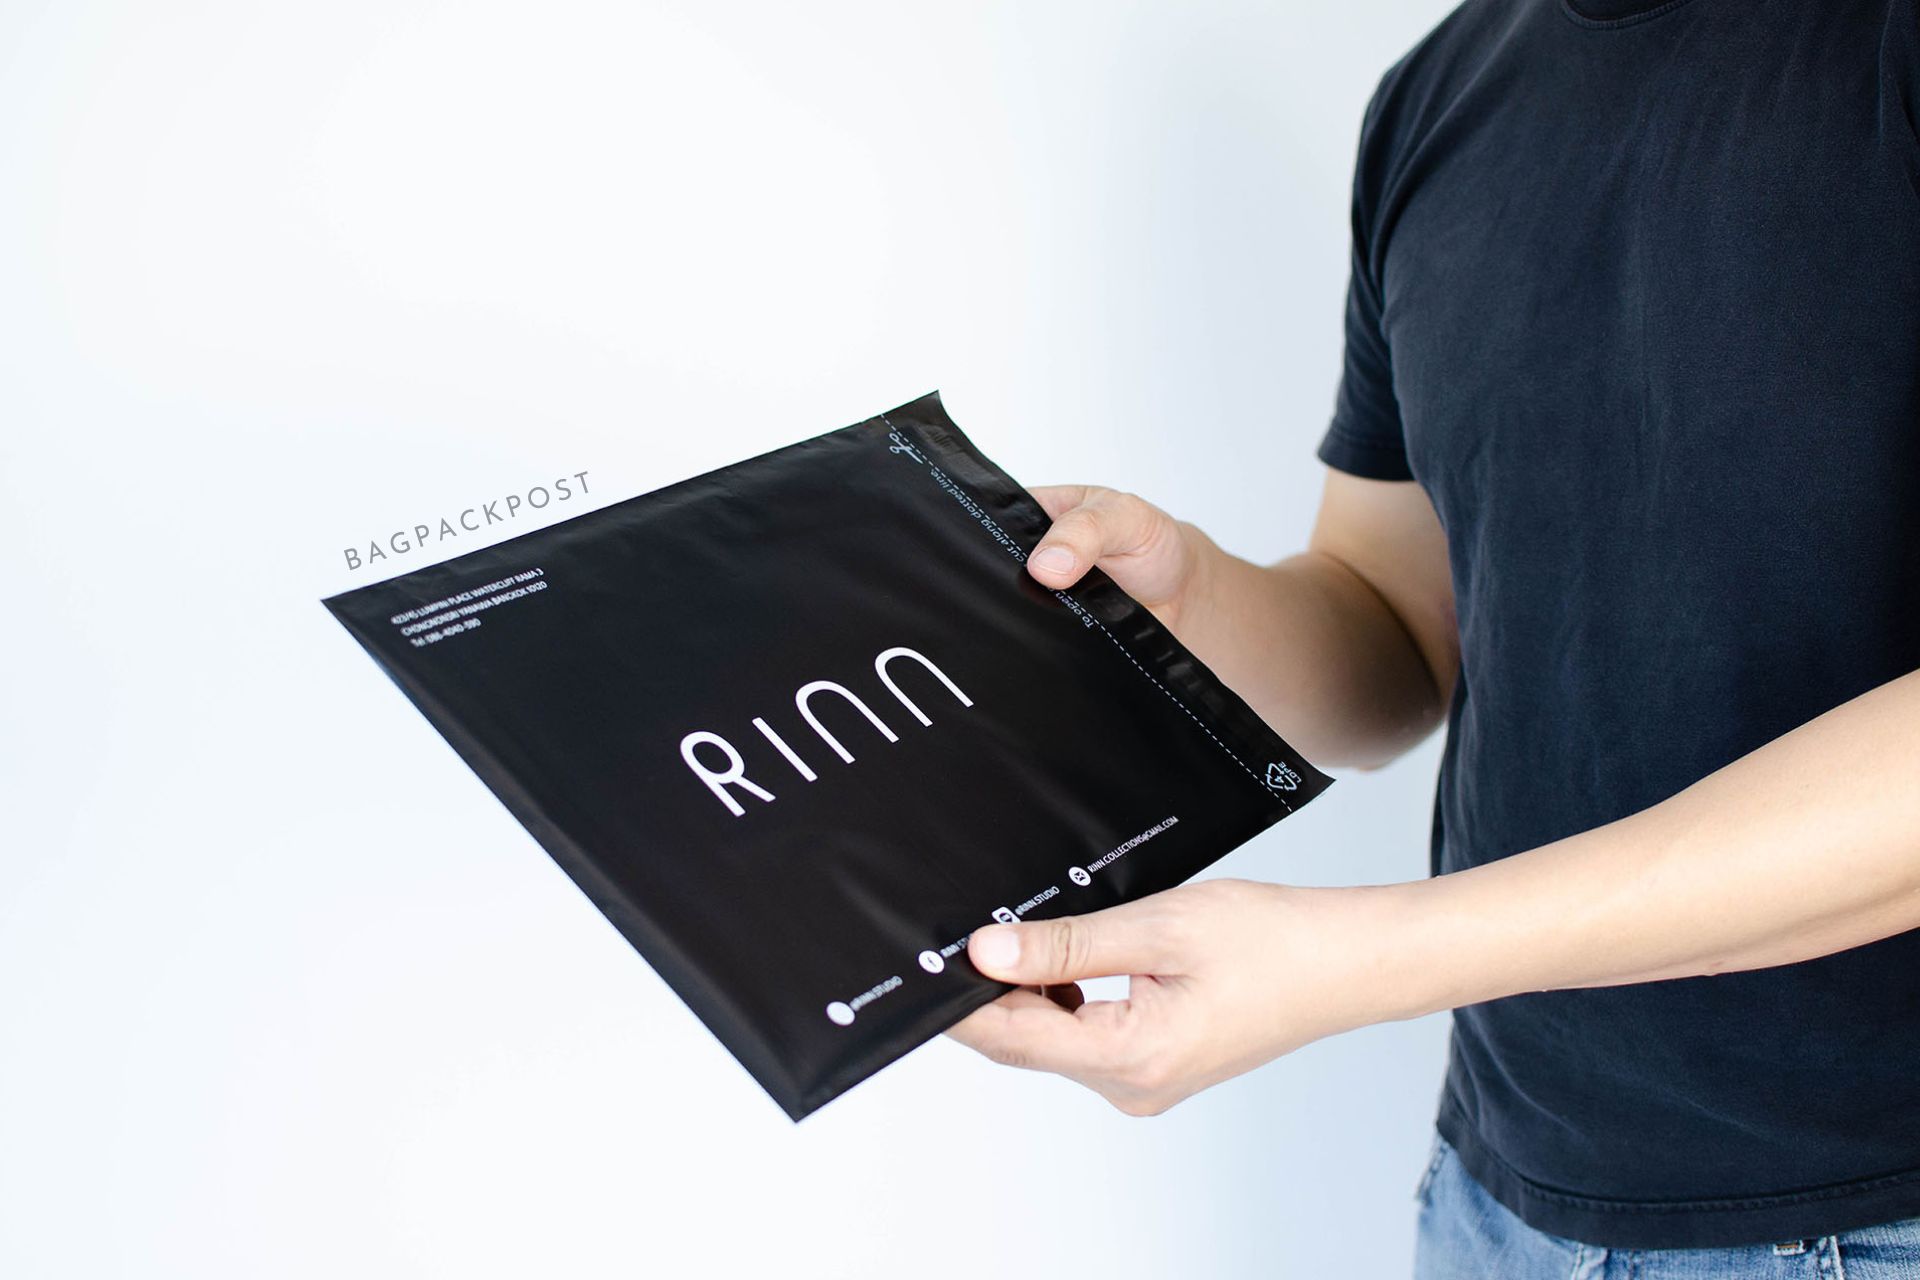 ผลิตถุงไปรษณีย์ ซองไปรษณีย์พิมพ์ลาย Rinn ซองไปรษณีย์สีดำ ถุงไปรษณีย์พิมพ์ลาย 1 BagPackPost